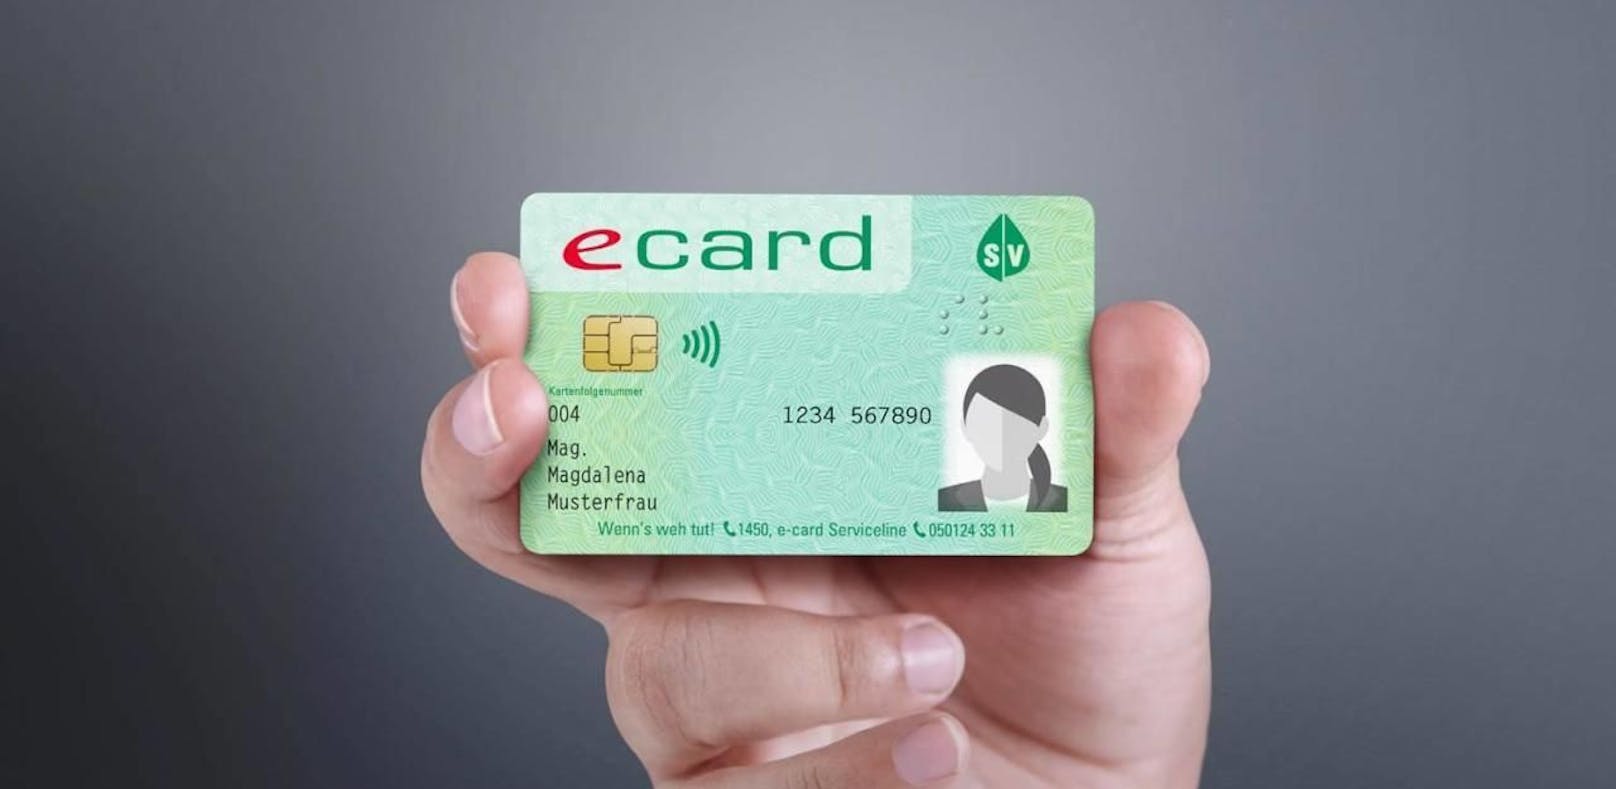 Ab 2020 kommt die neue e-card mit Foto